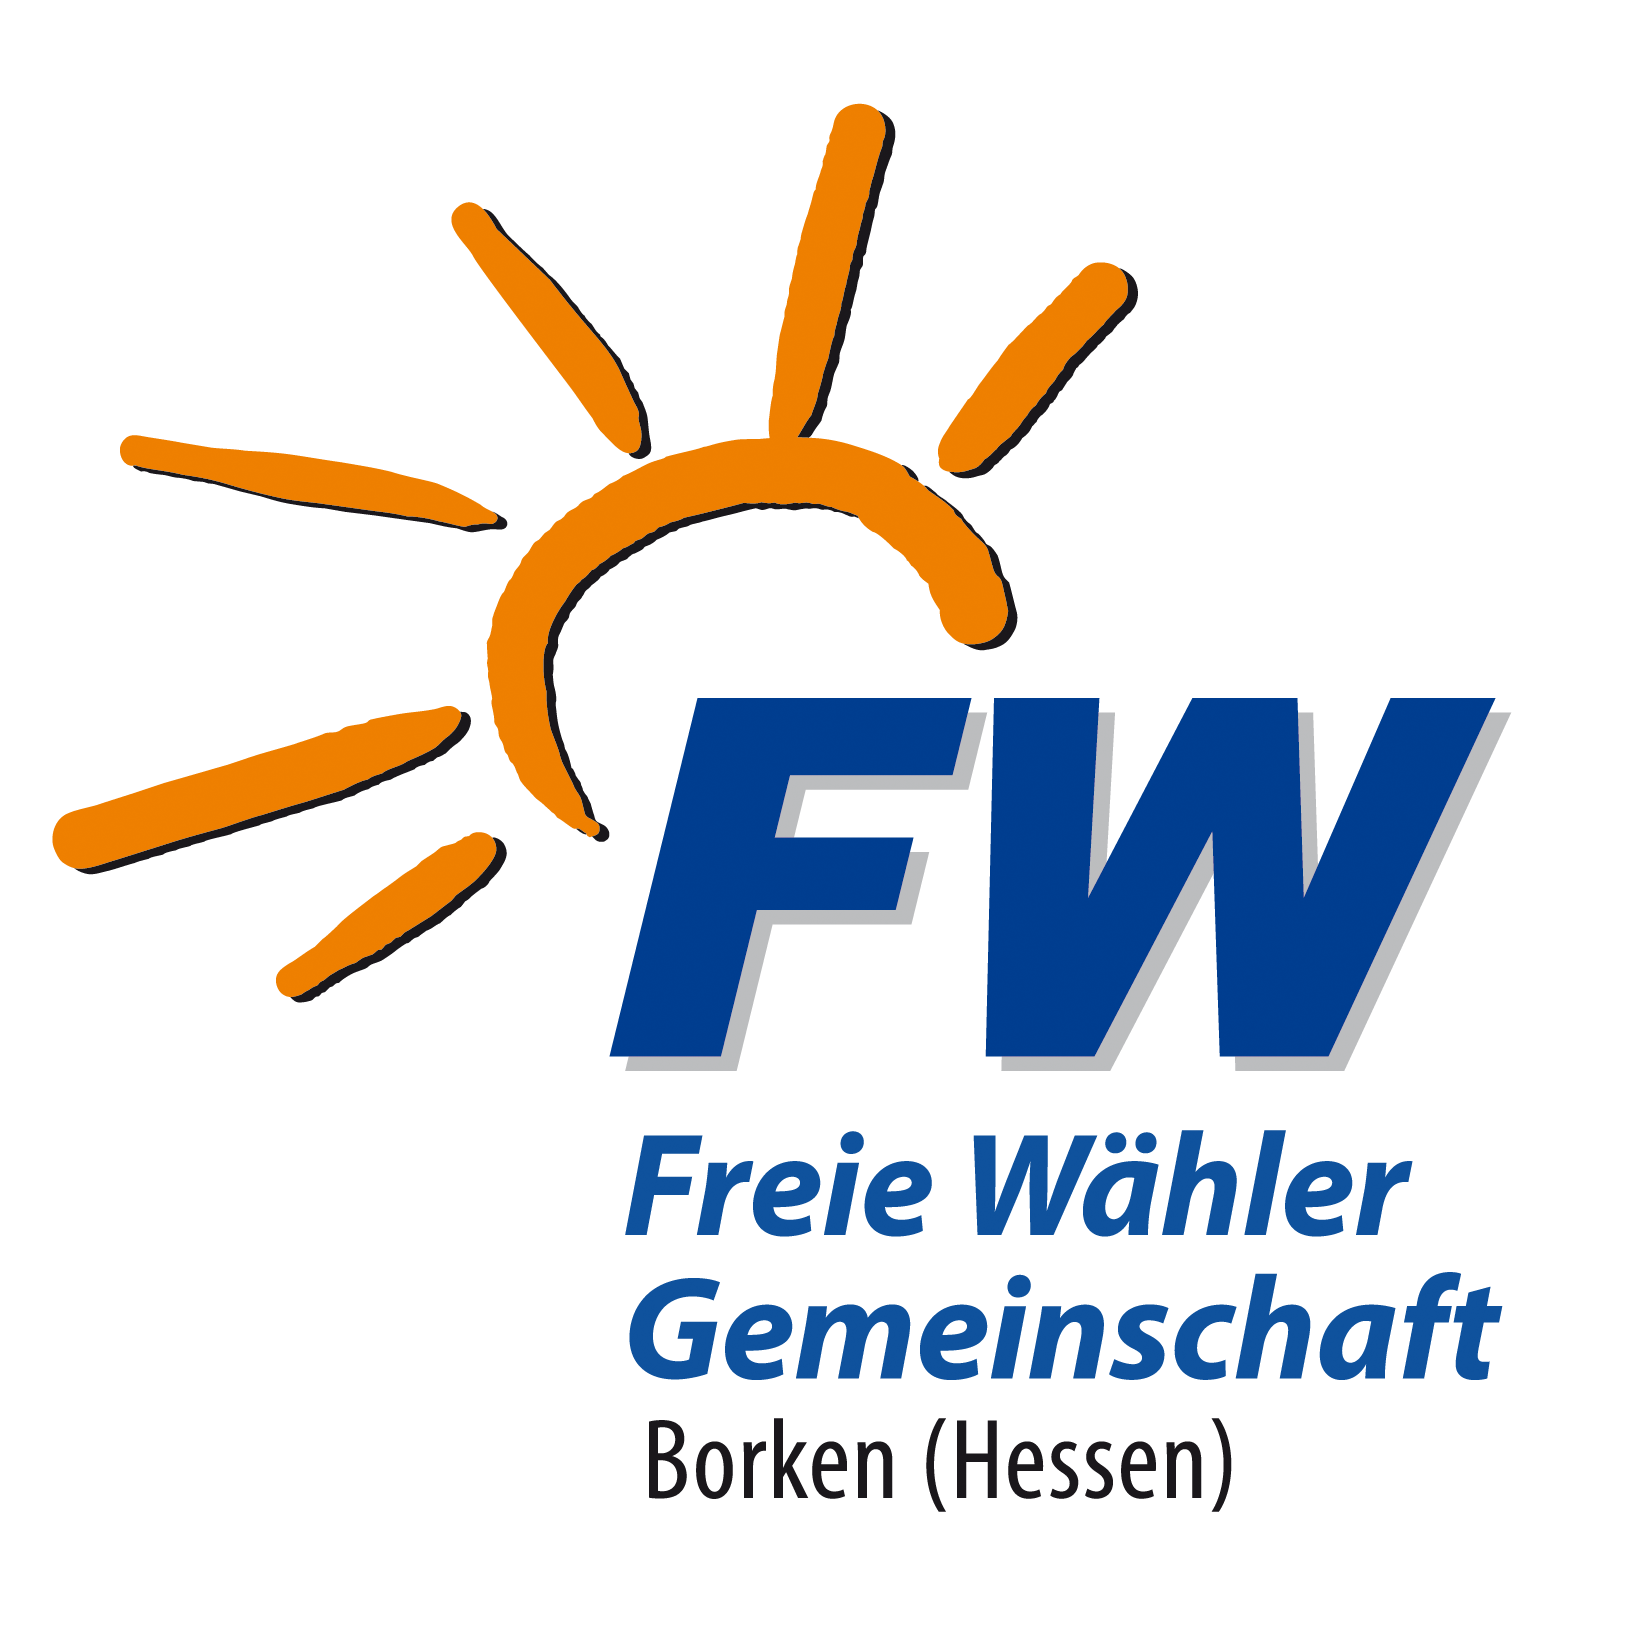 FWG-Borken (Hessen)